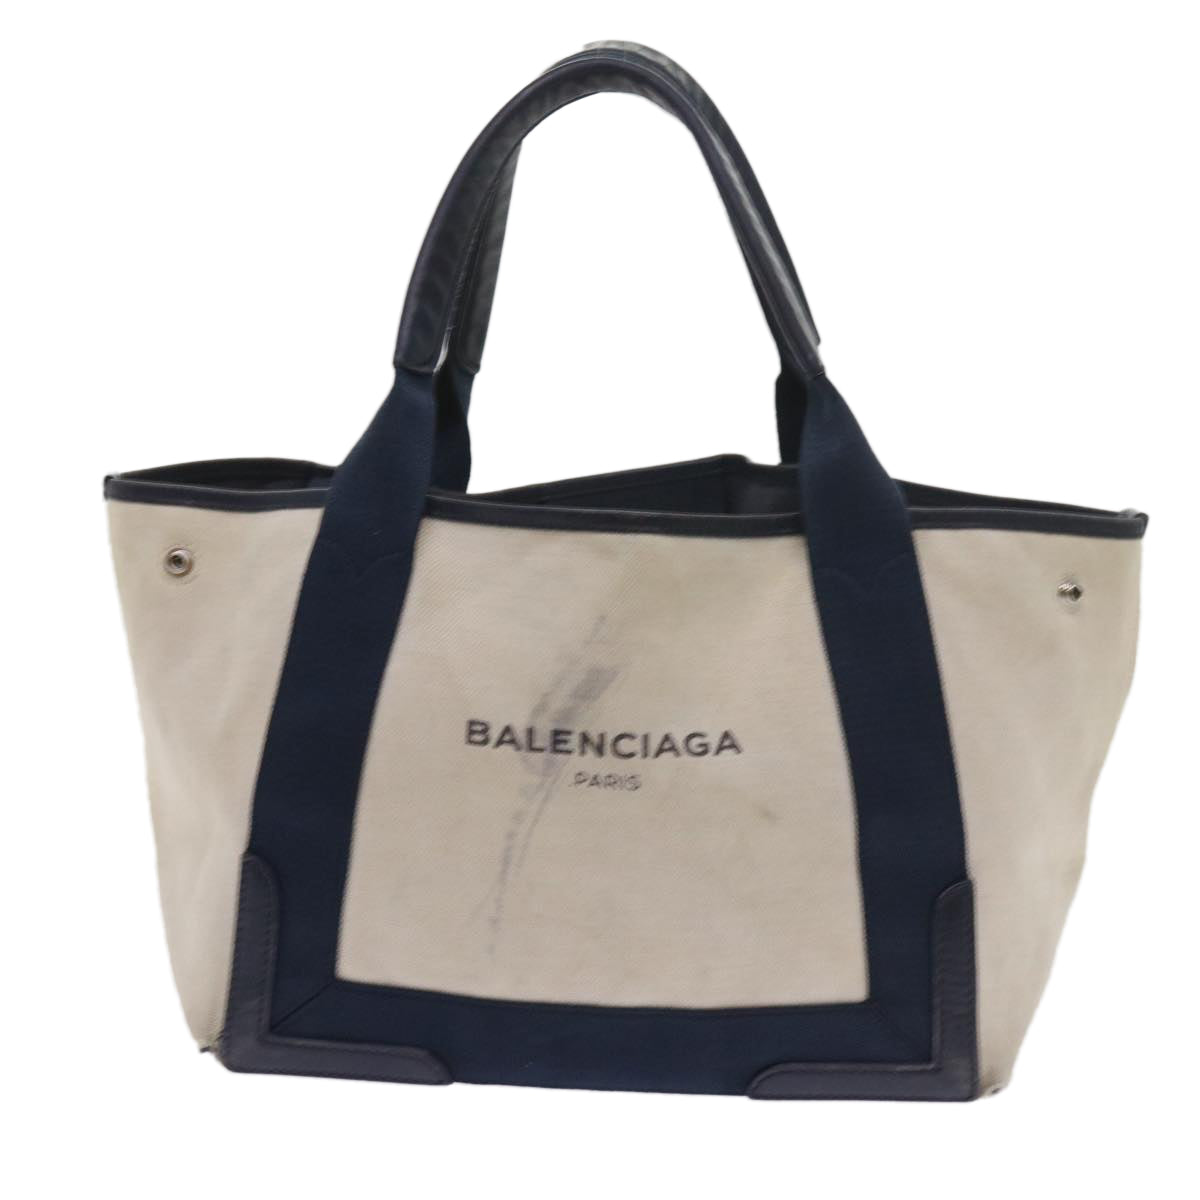 BALENCIAGA Tote Bag Canvas Beige 339933 Auth bs9790